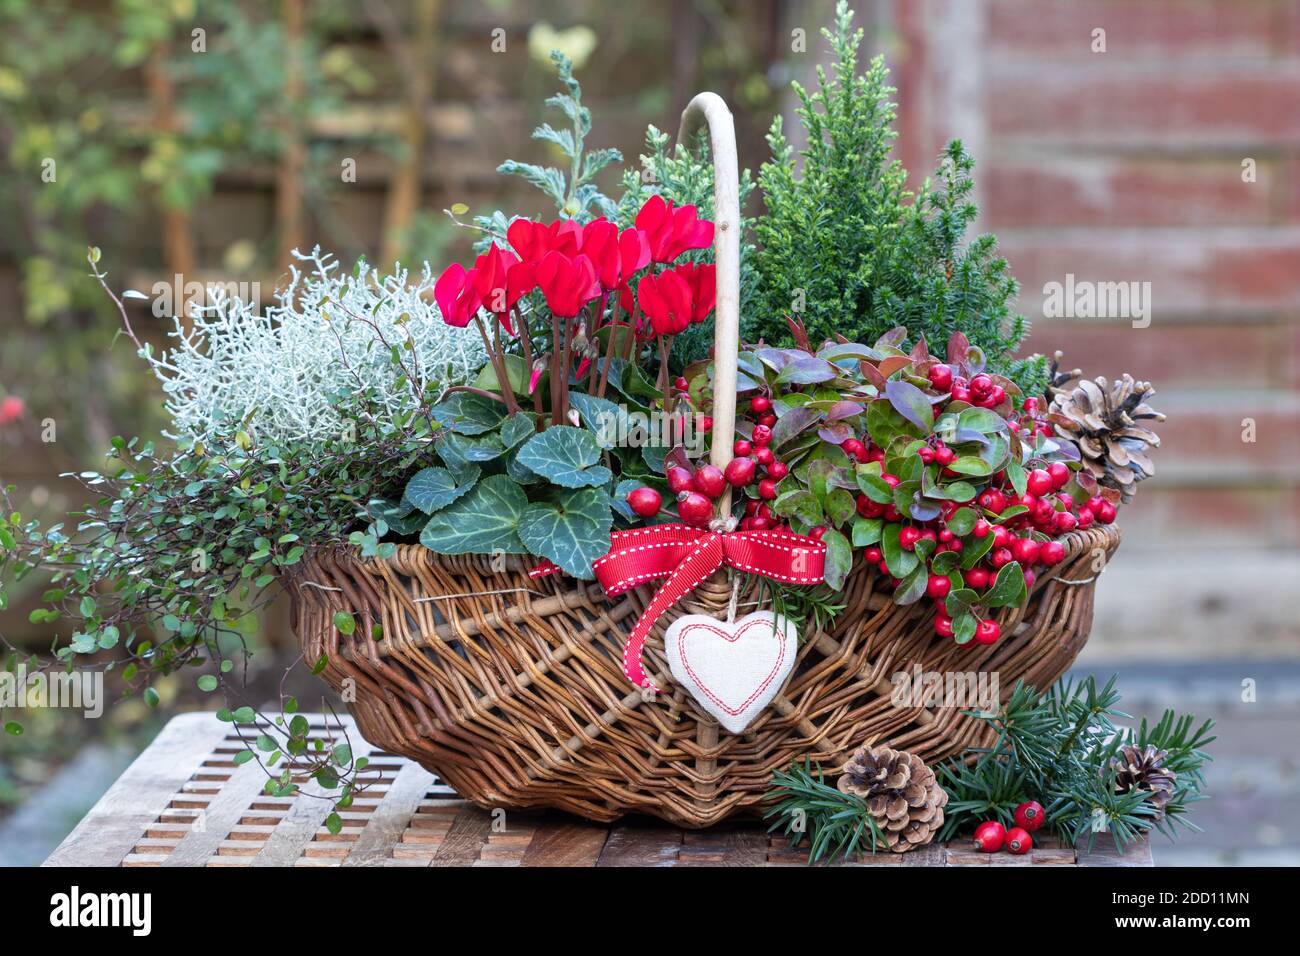 cesto con ciclamino rosso, gaulteria, conifere e cespuglio cuscino come decorazione giardino invernale Foto Stock